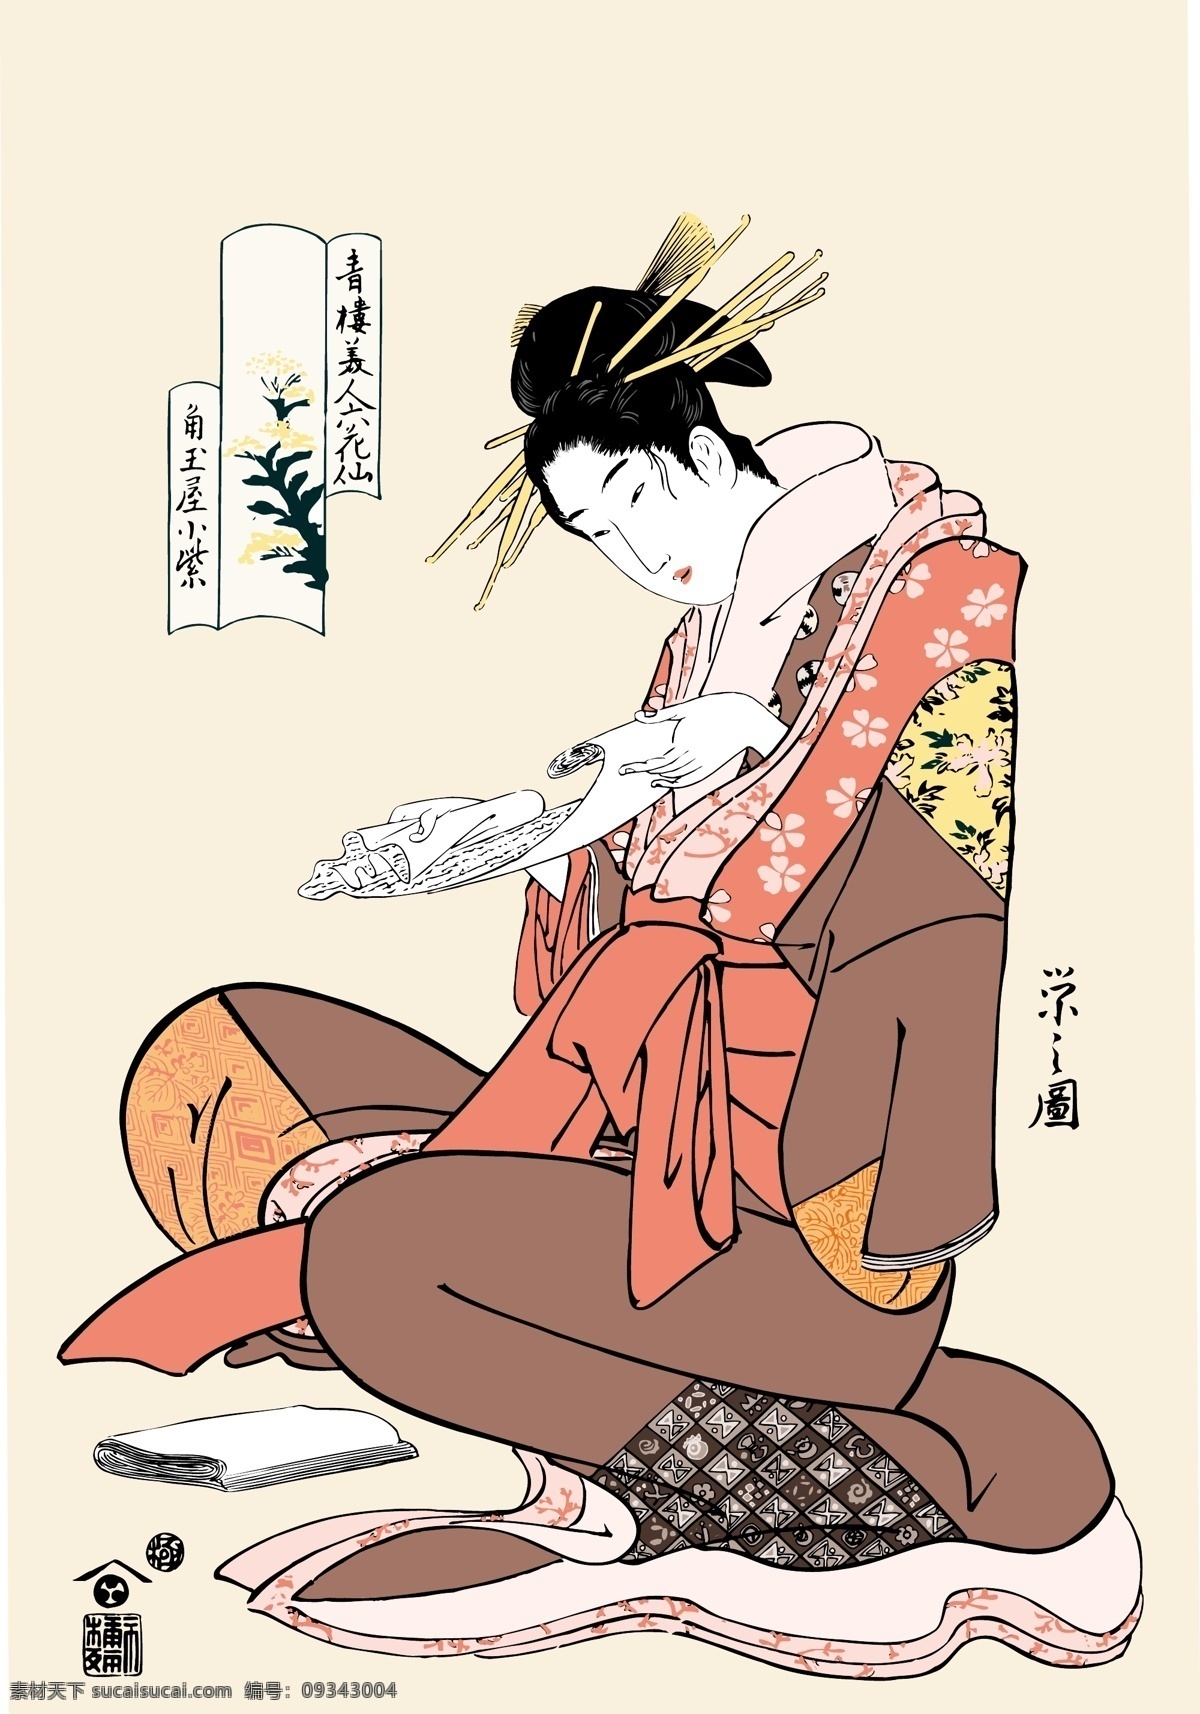 日本浮世绘 读书 日本 传统 浮世绘 古代 美女 和服 人物 矢量 书 文化 其他人物 矢量人物